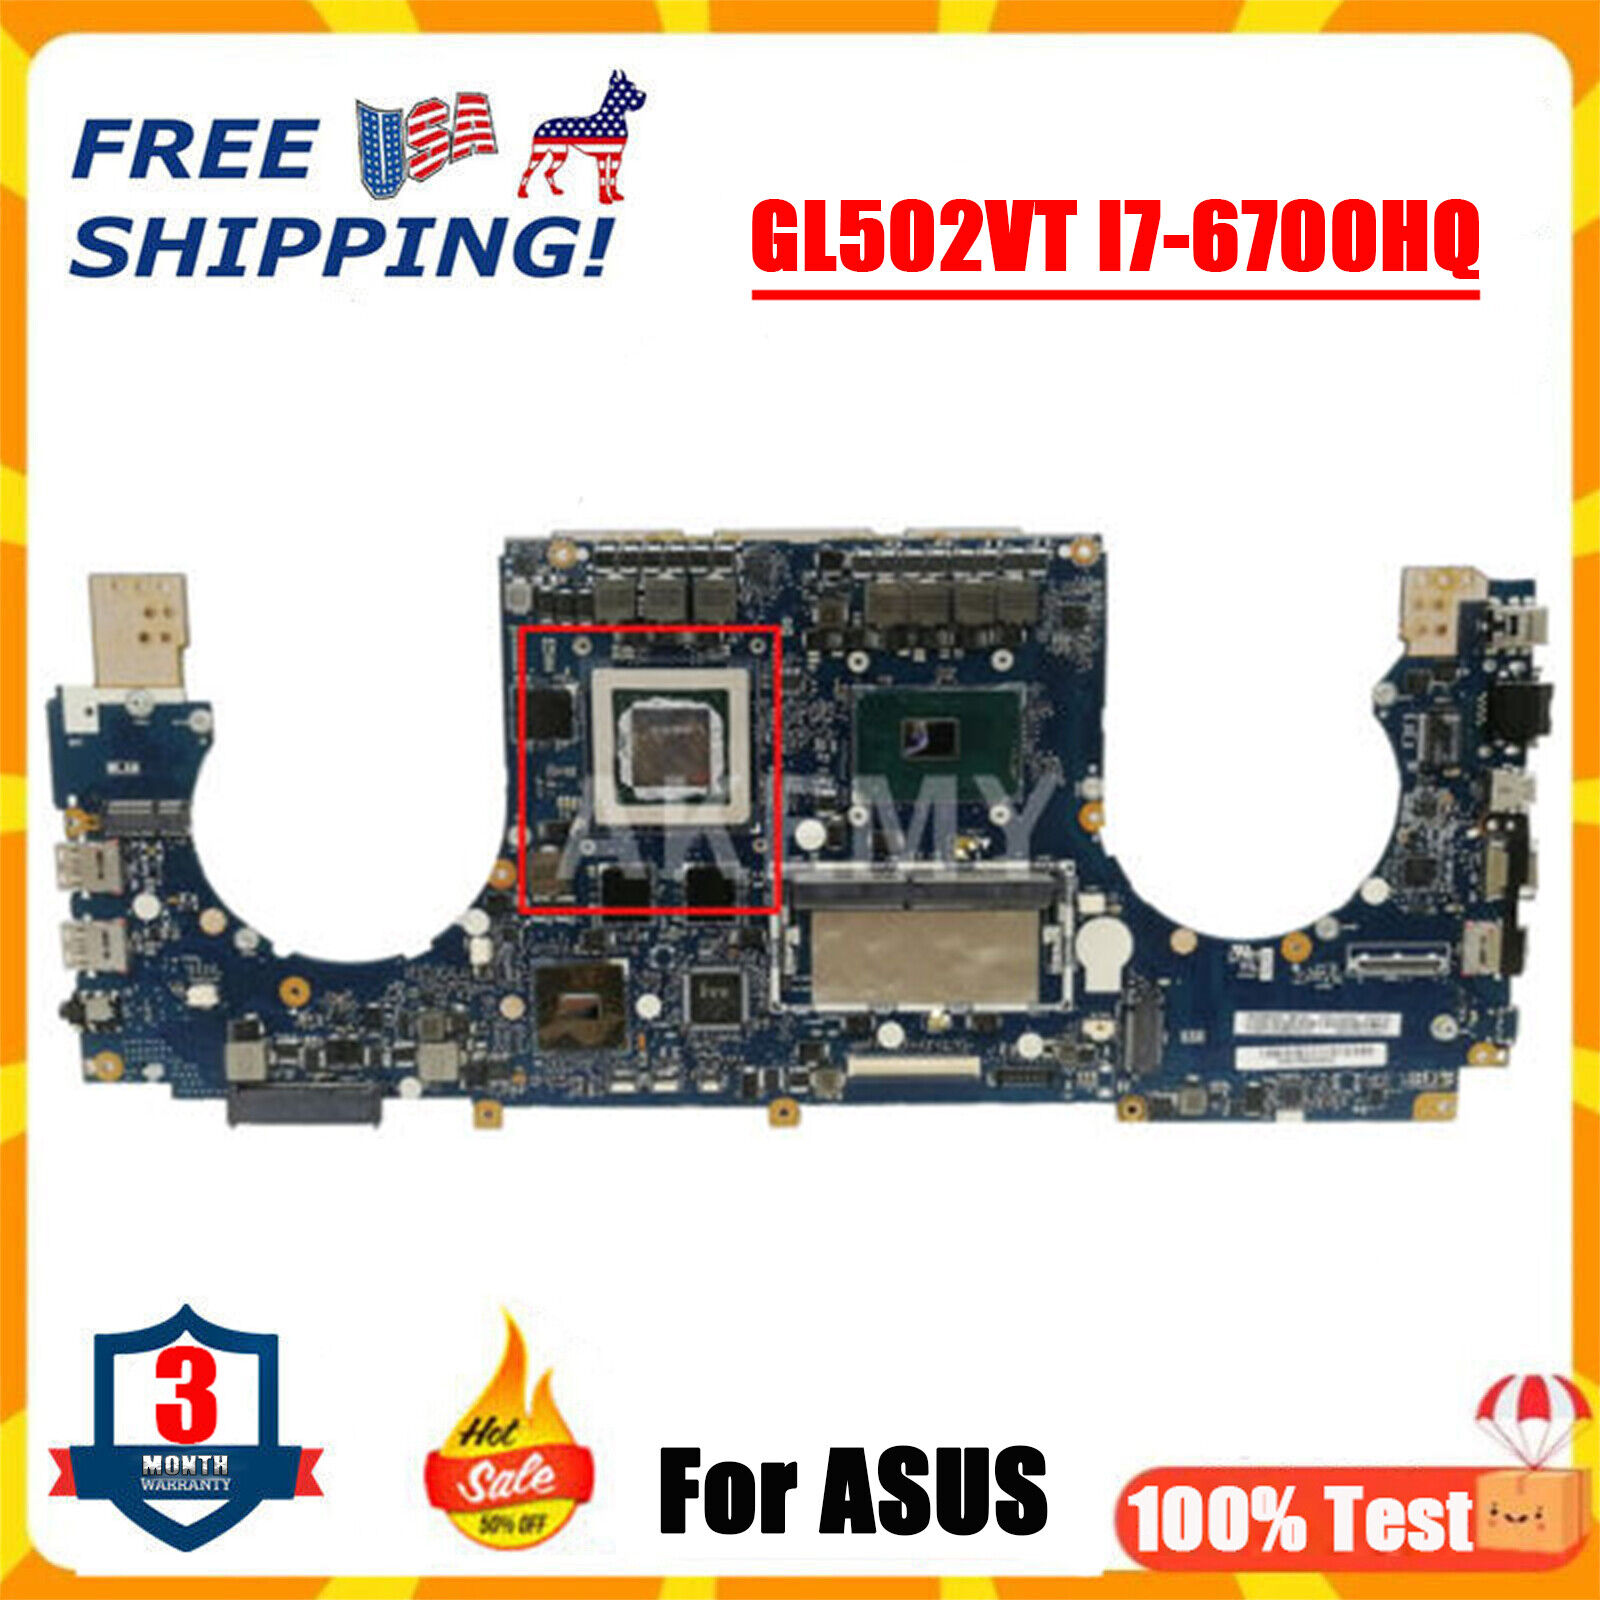 GL502VT Motherboard For ASUS ROG GL502V W/ I7-6700HQ GTX970M 8GB Mainboard V3G